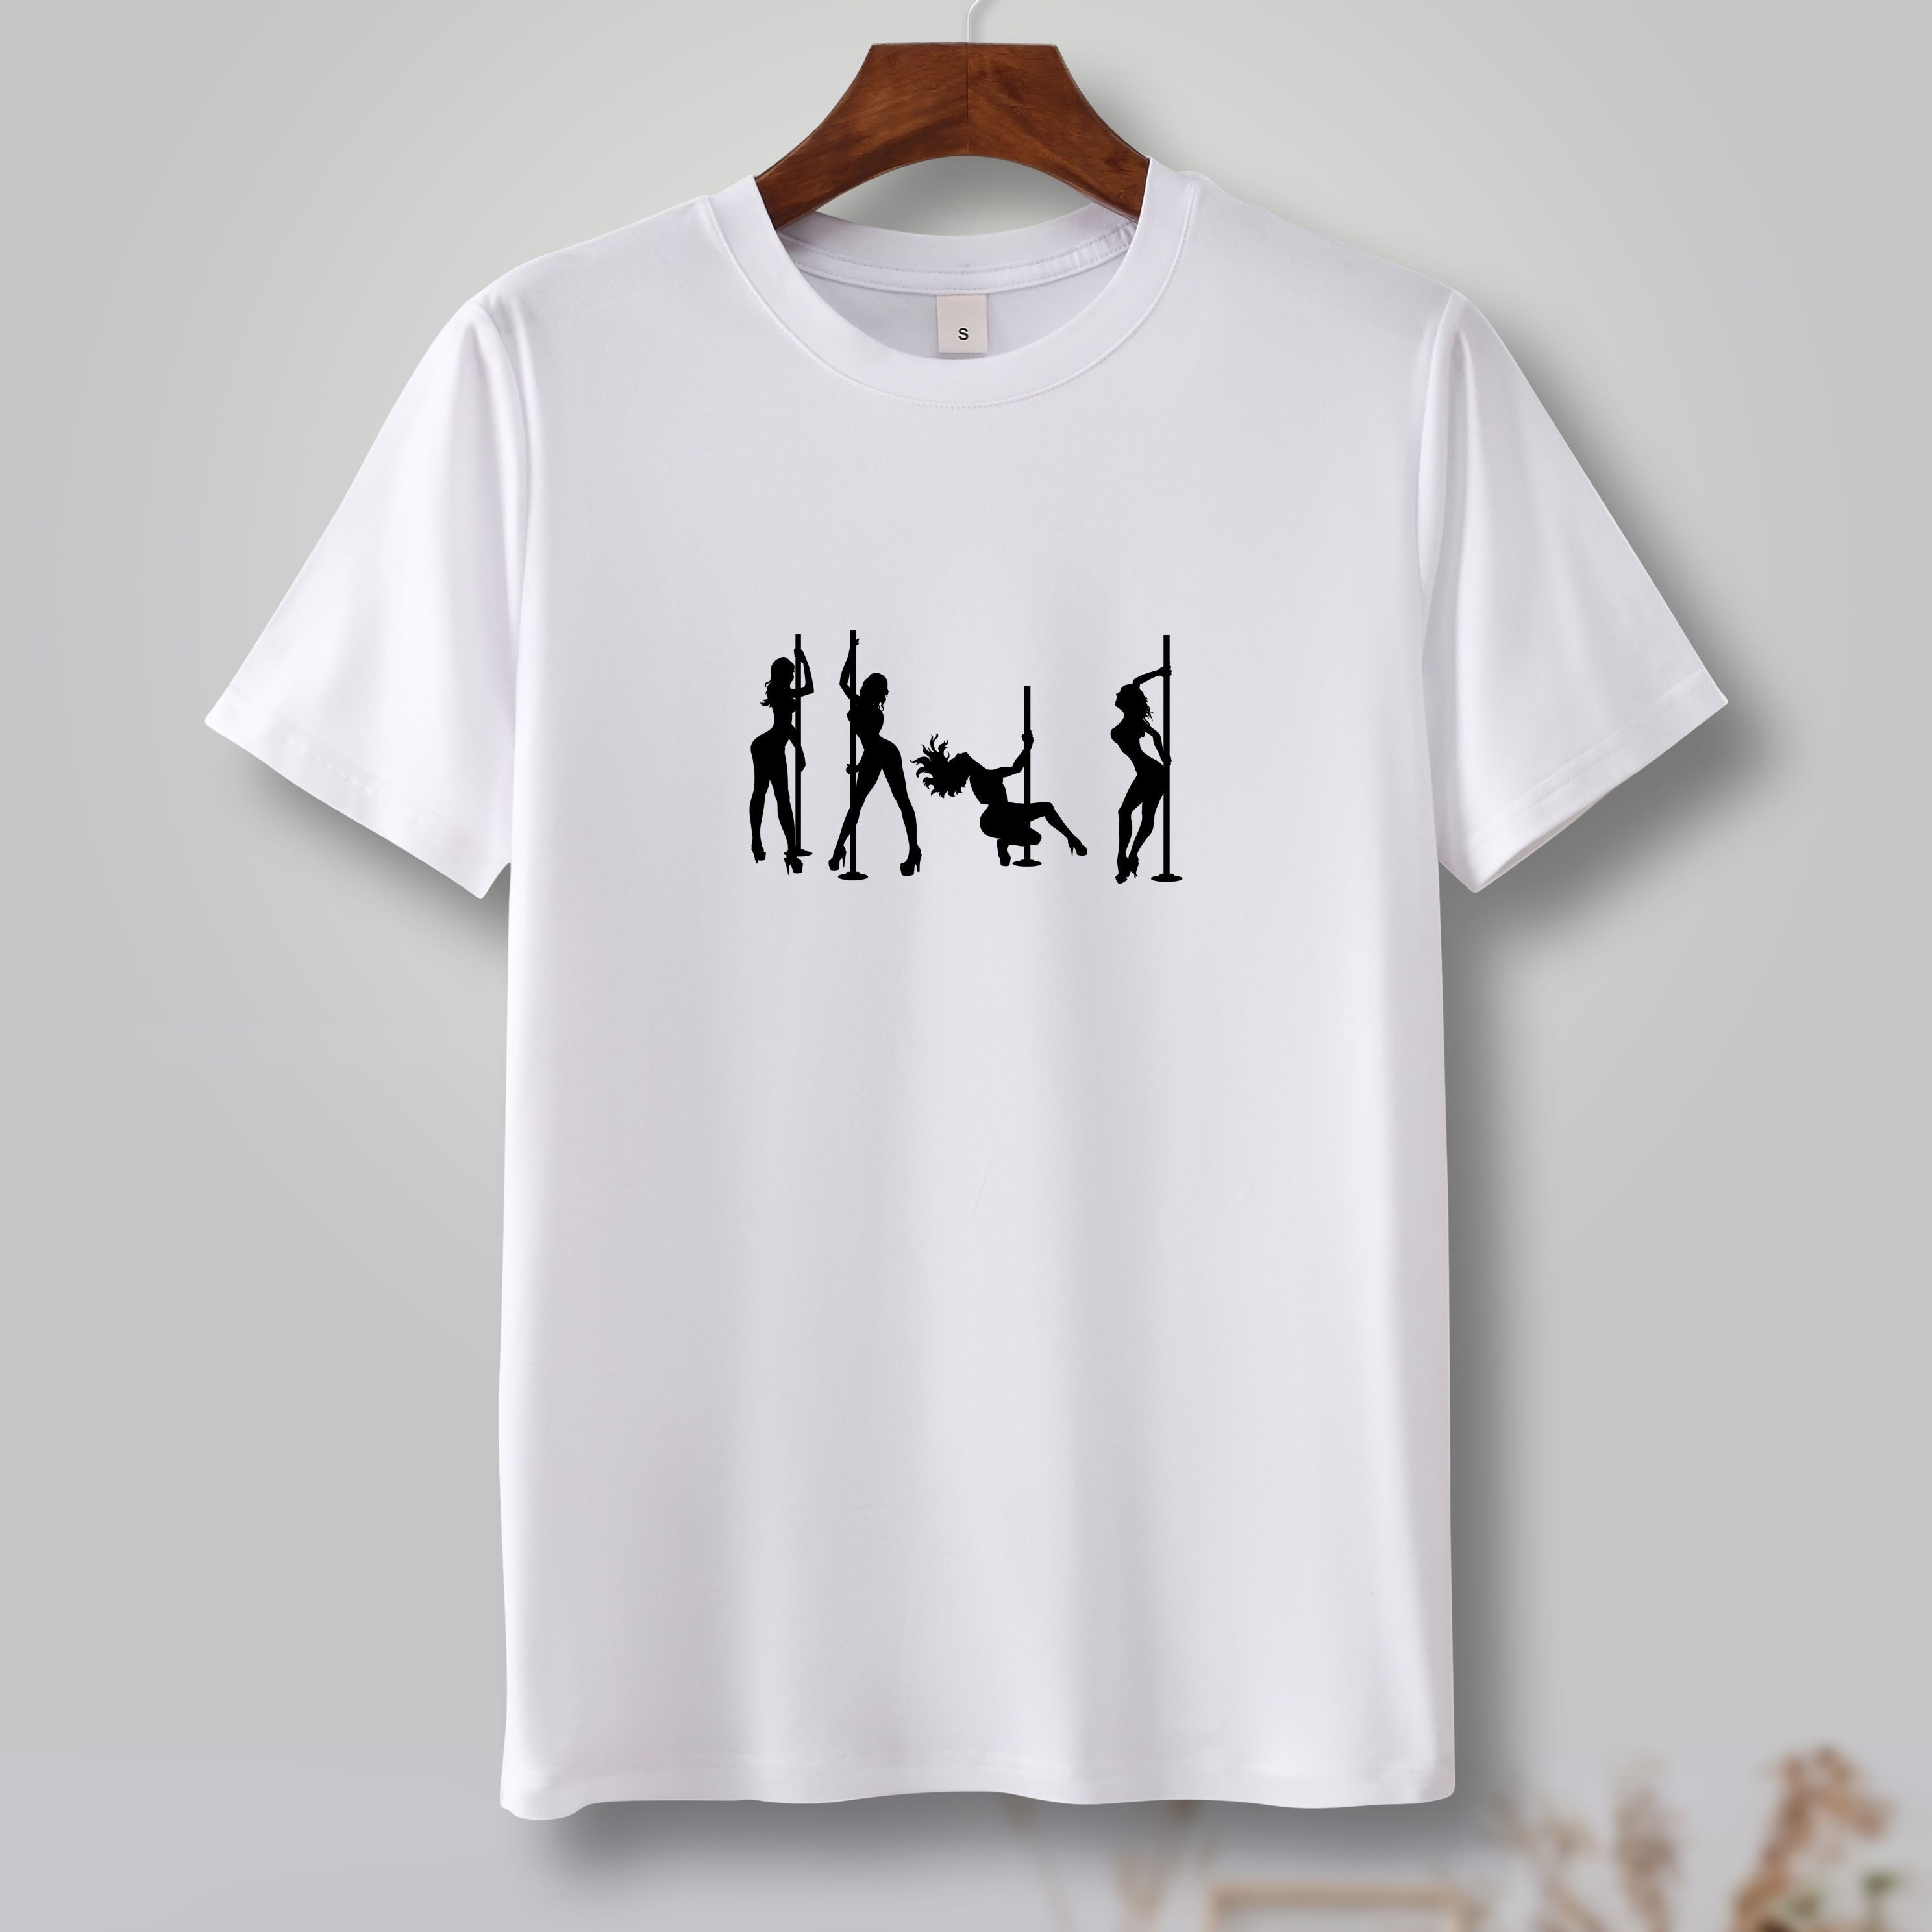 

Men's Pole Dancer Print Short Sleeve T-shirts, Comfy Casual Elastic Crew Neck Tops For Men's Outdoor Activities